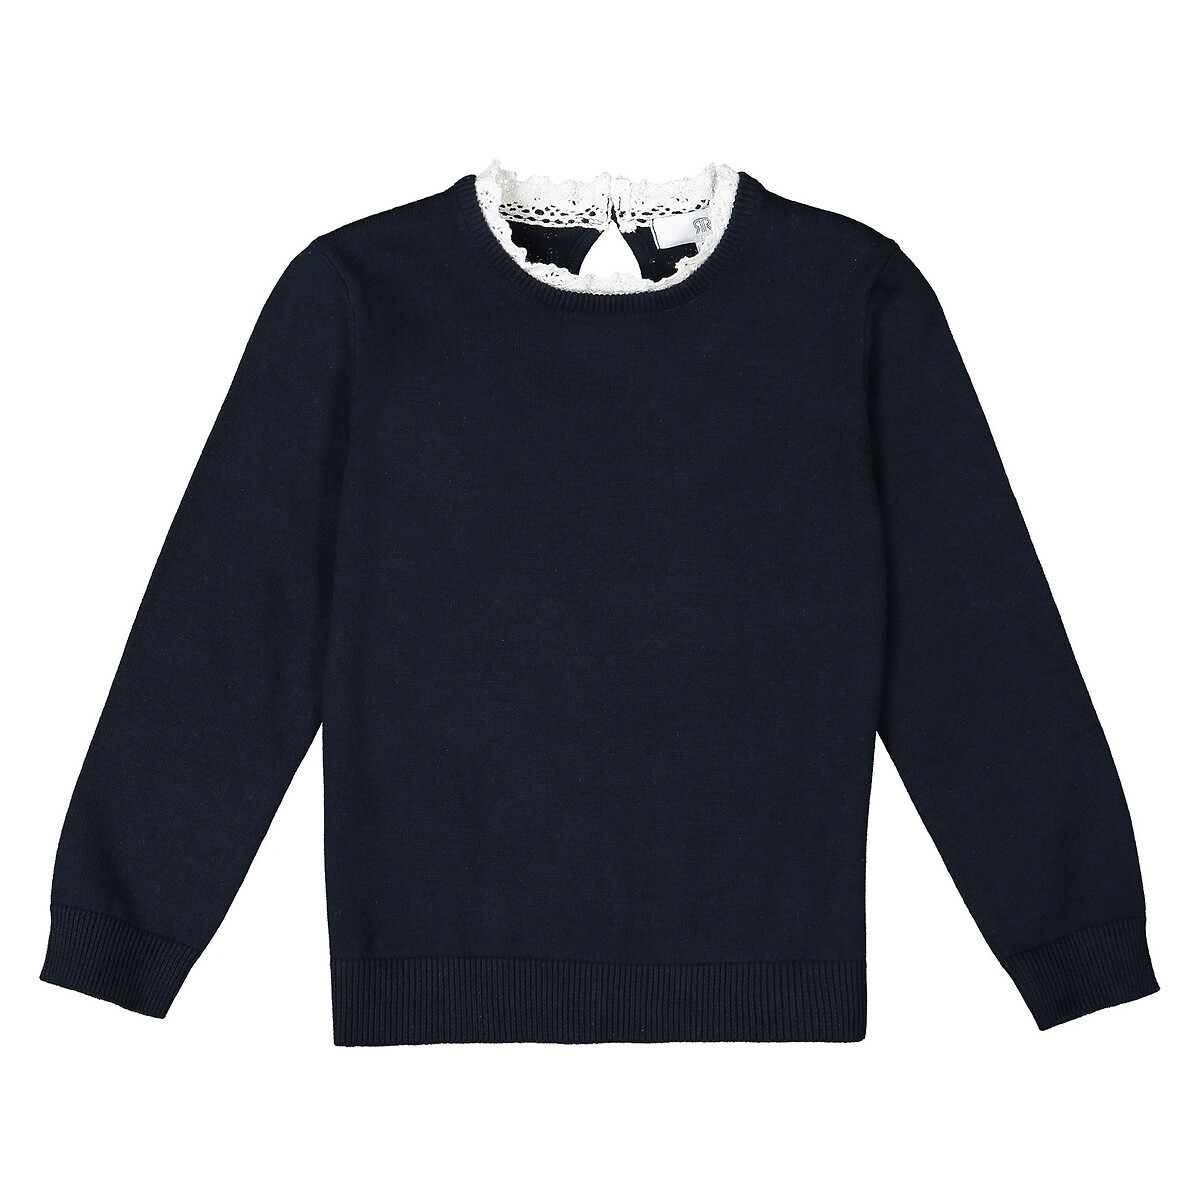 Пуловер LaRedoute С эффектом 2 в 1 воротник связан крючком 3-12 лет 12 лет -150 см синий, размер 12 лет -150 см - фото 2